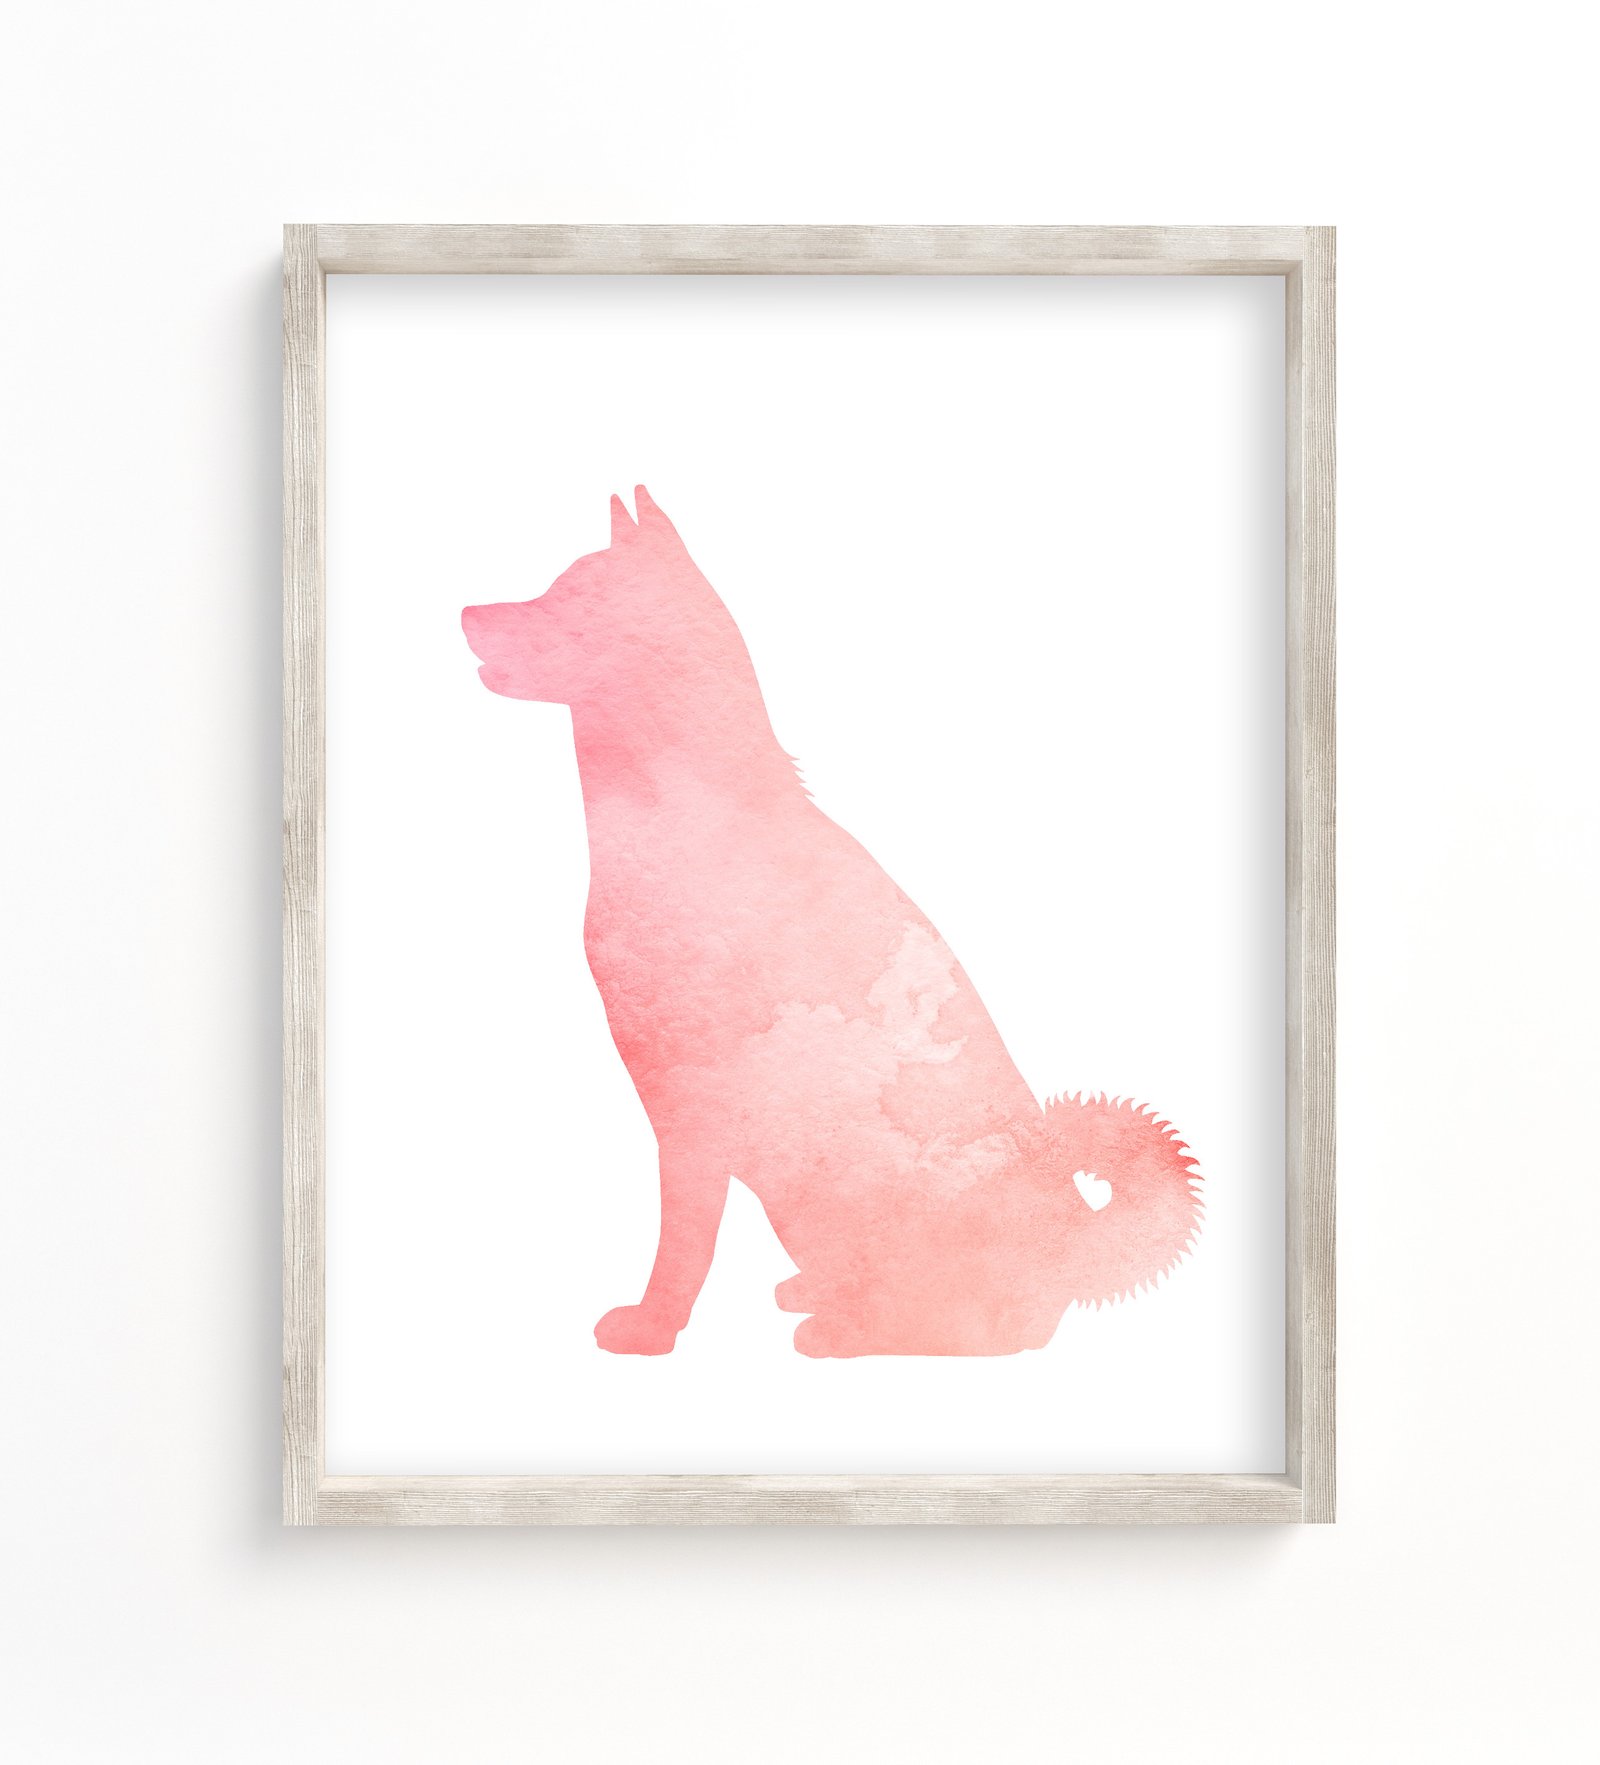 art print showing a pink akita